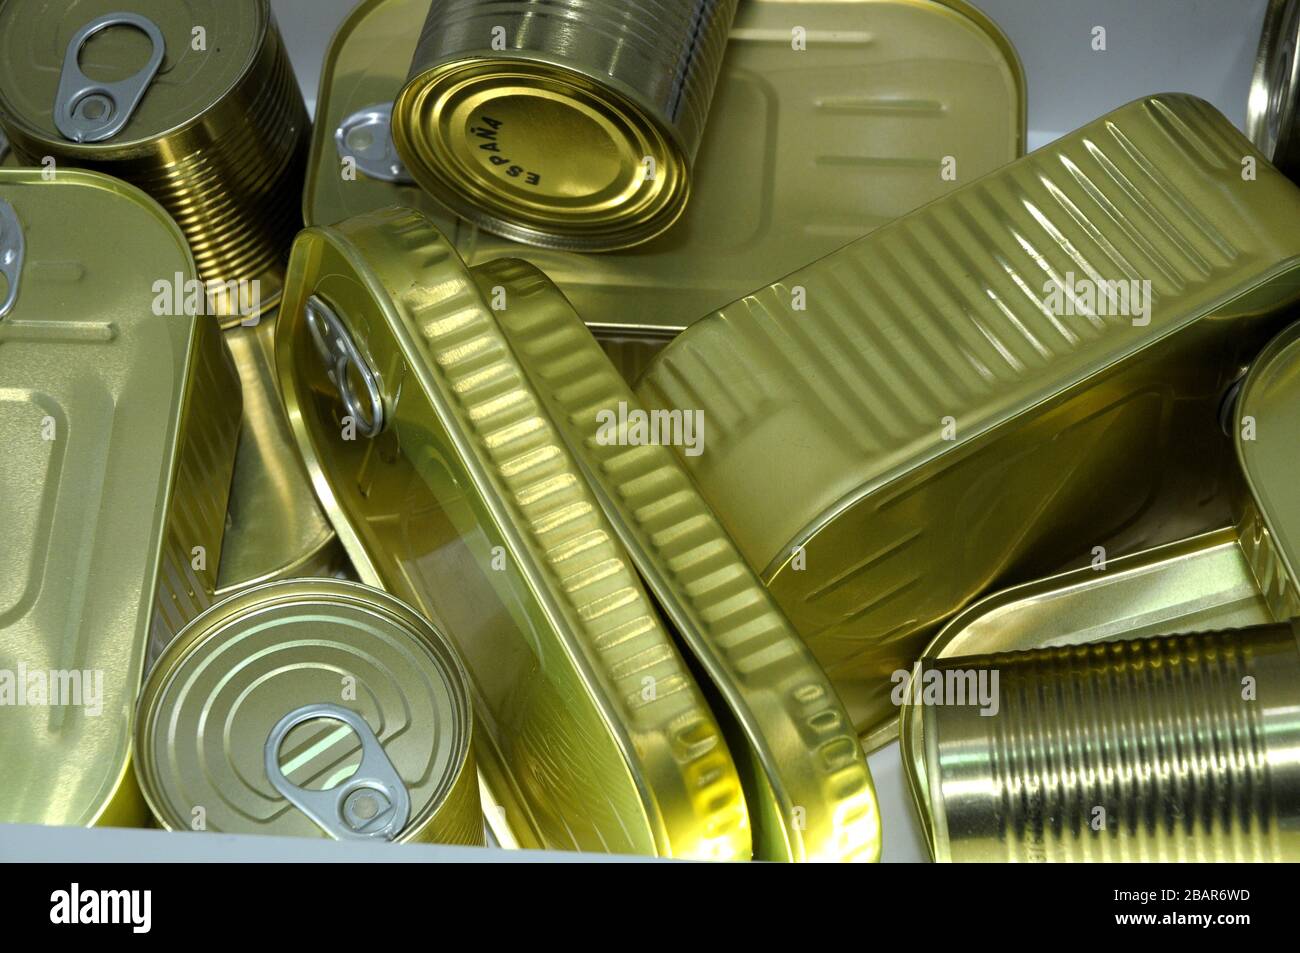 latas, Aluminiumo, Reciclado, Metall, Konserven, Latas de Conserva Stockfoto